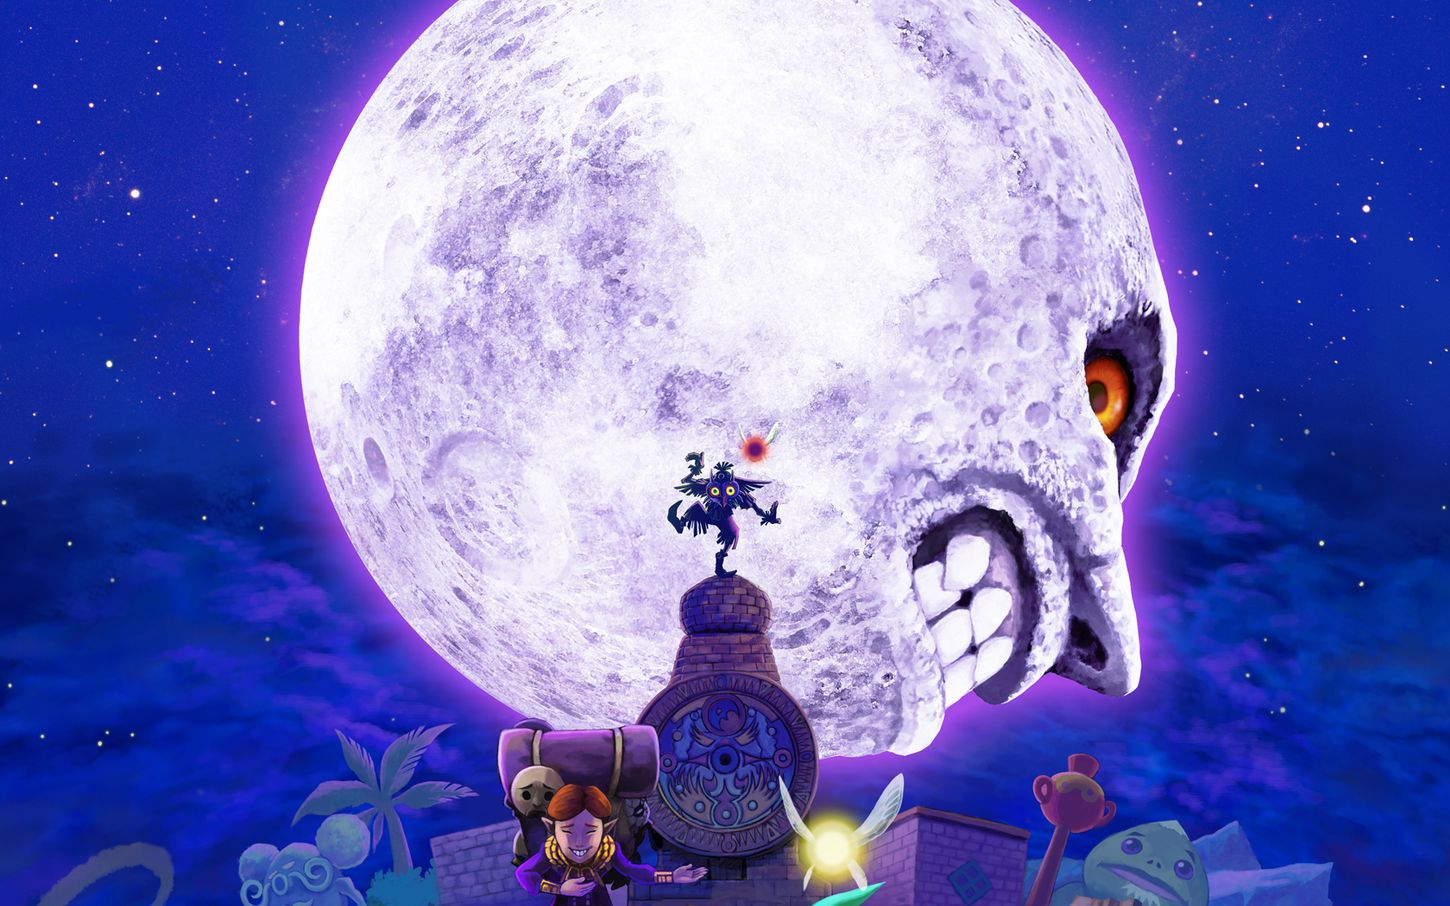 6) The Moon - The Legend of Zelda: Majora's Mask.